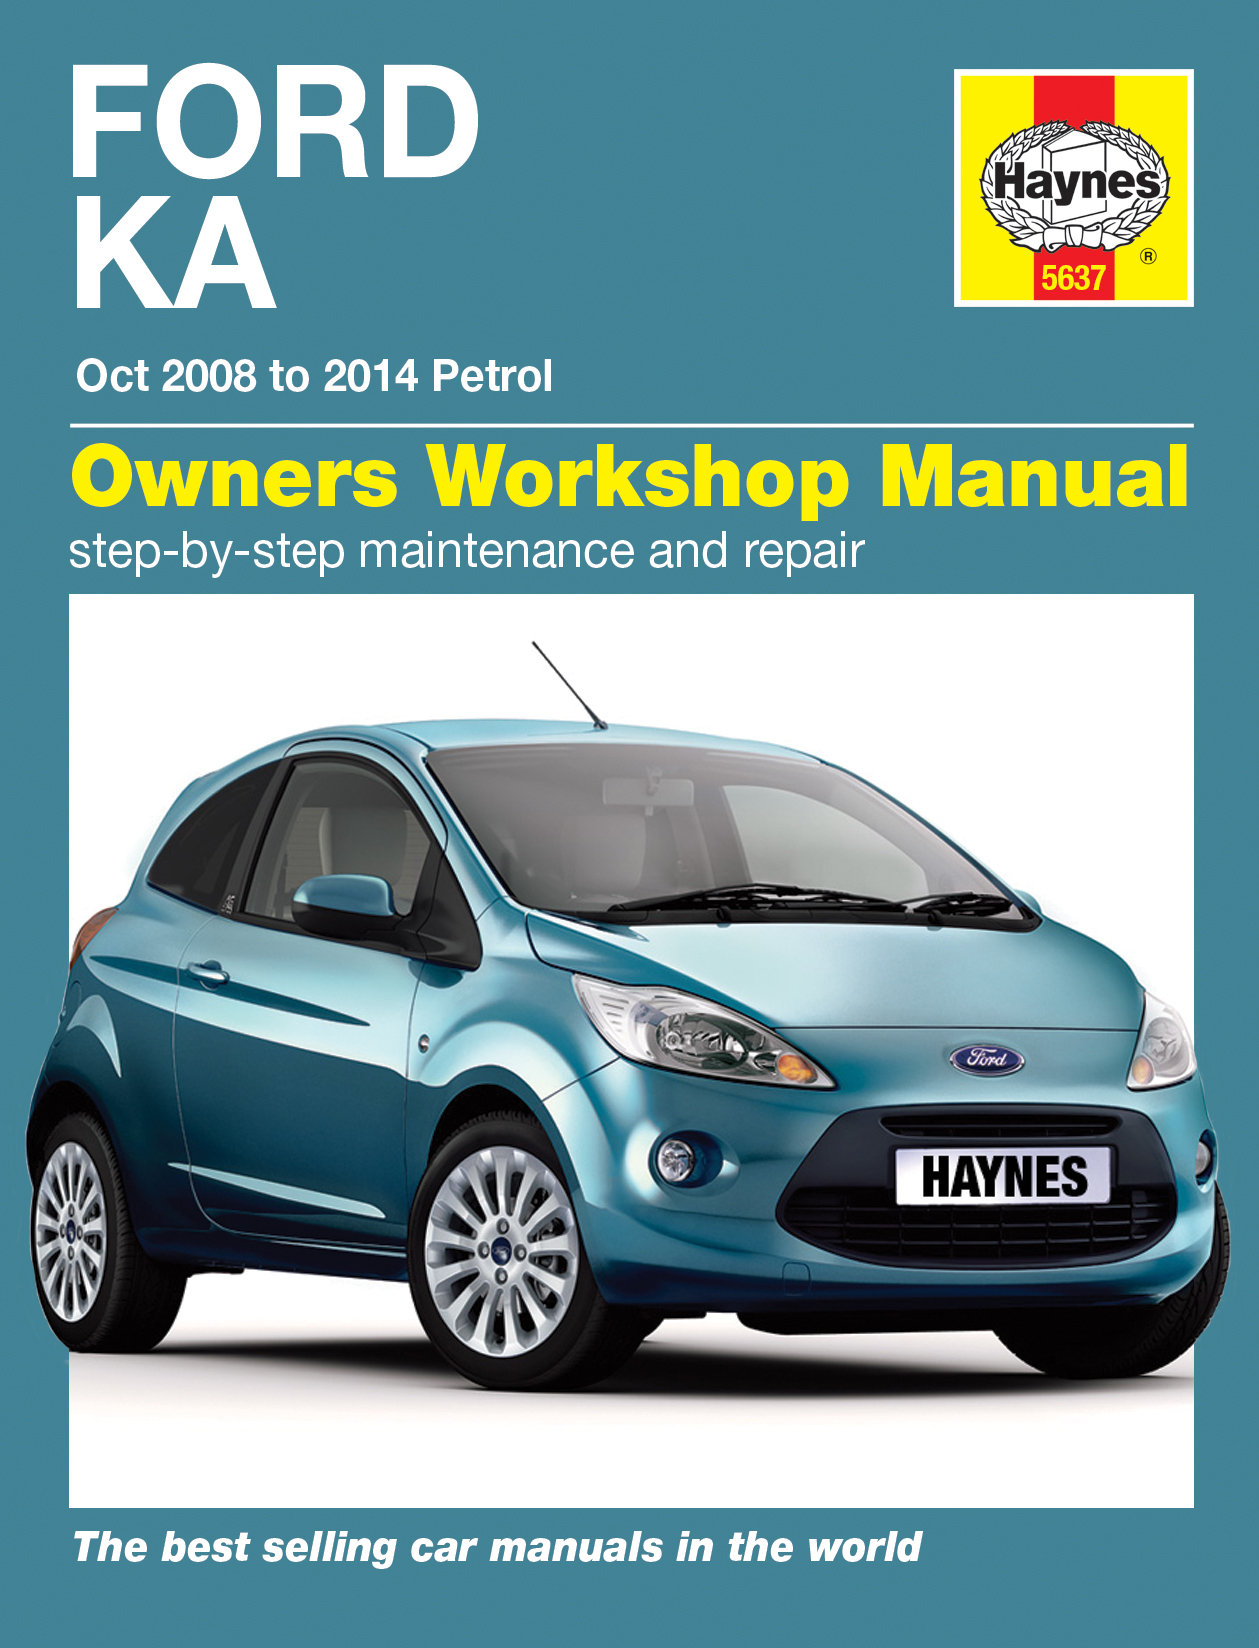 Haynes repair manual ford ka download #4